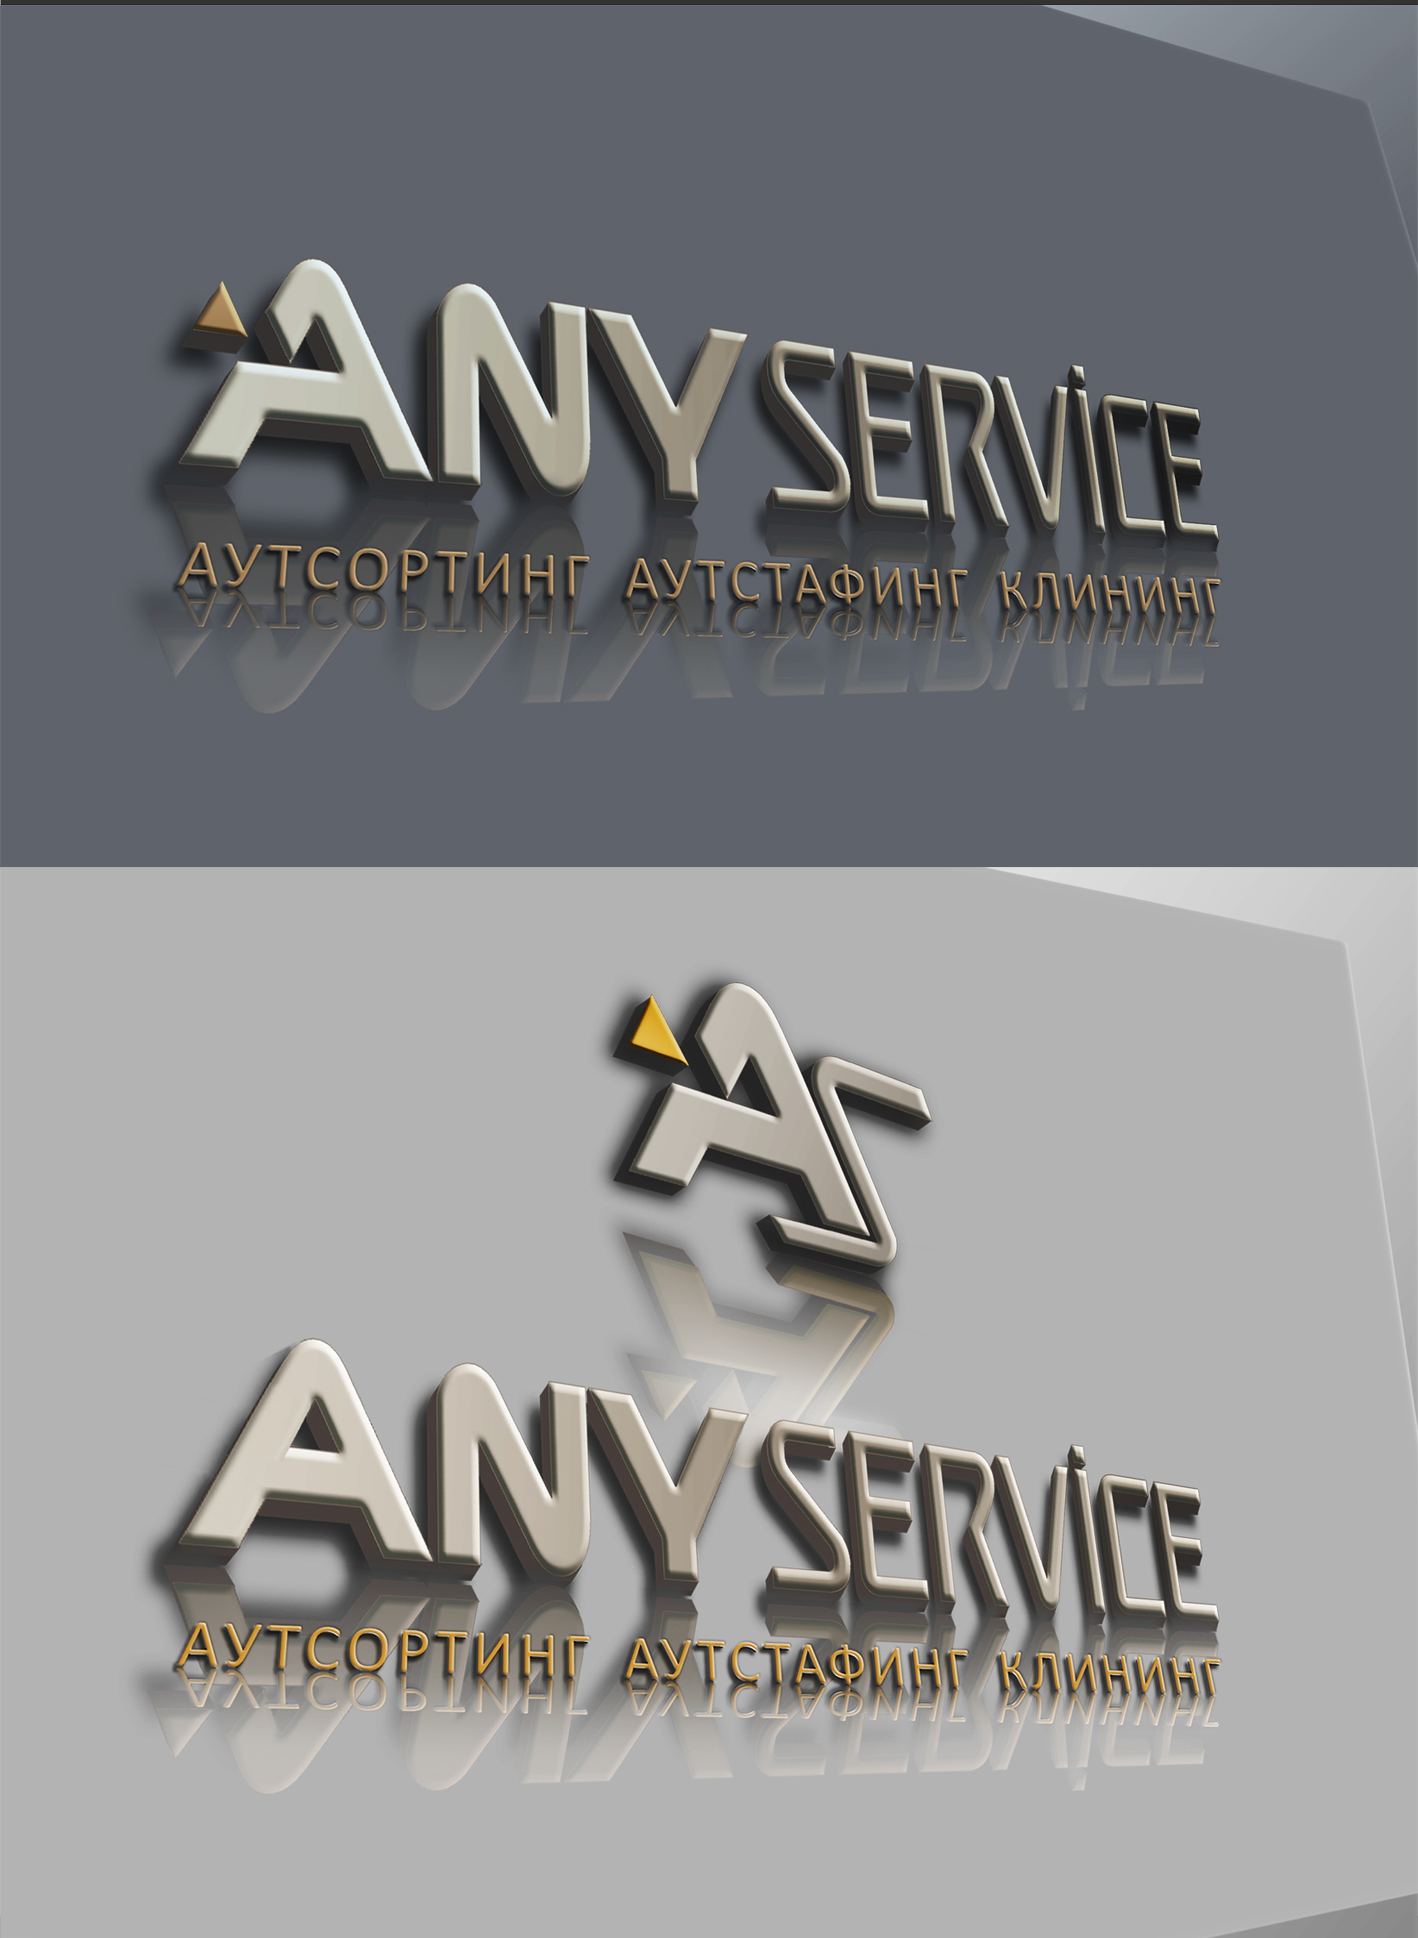 " Any Servise". Таблички